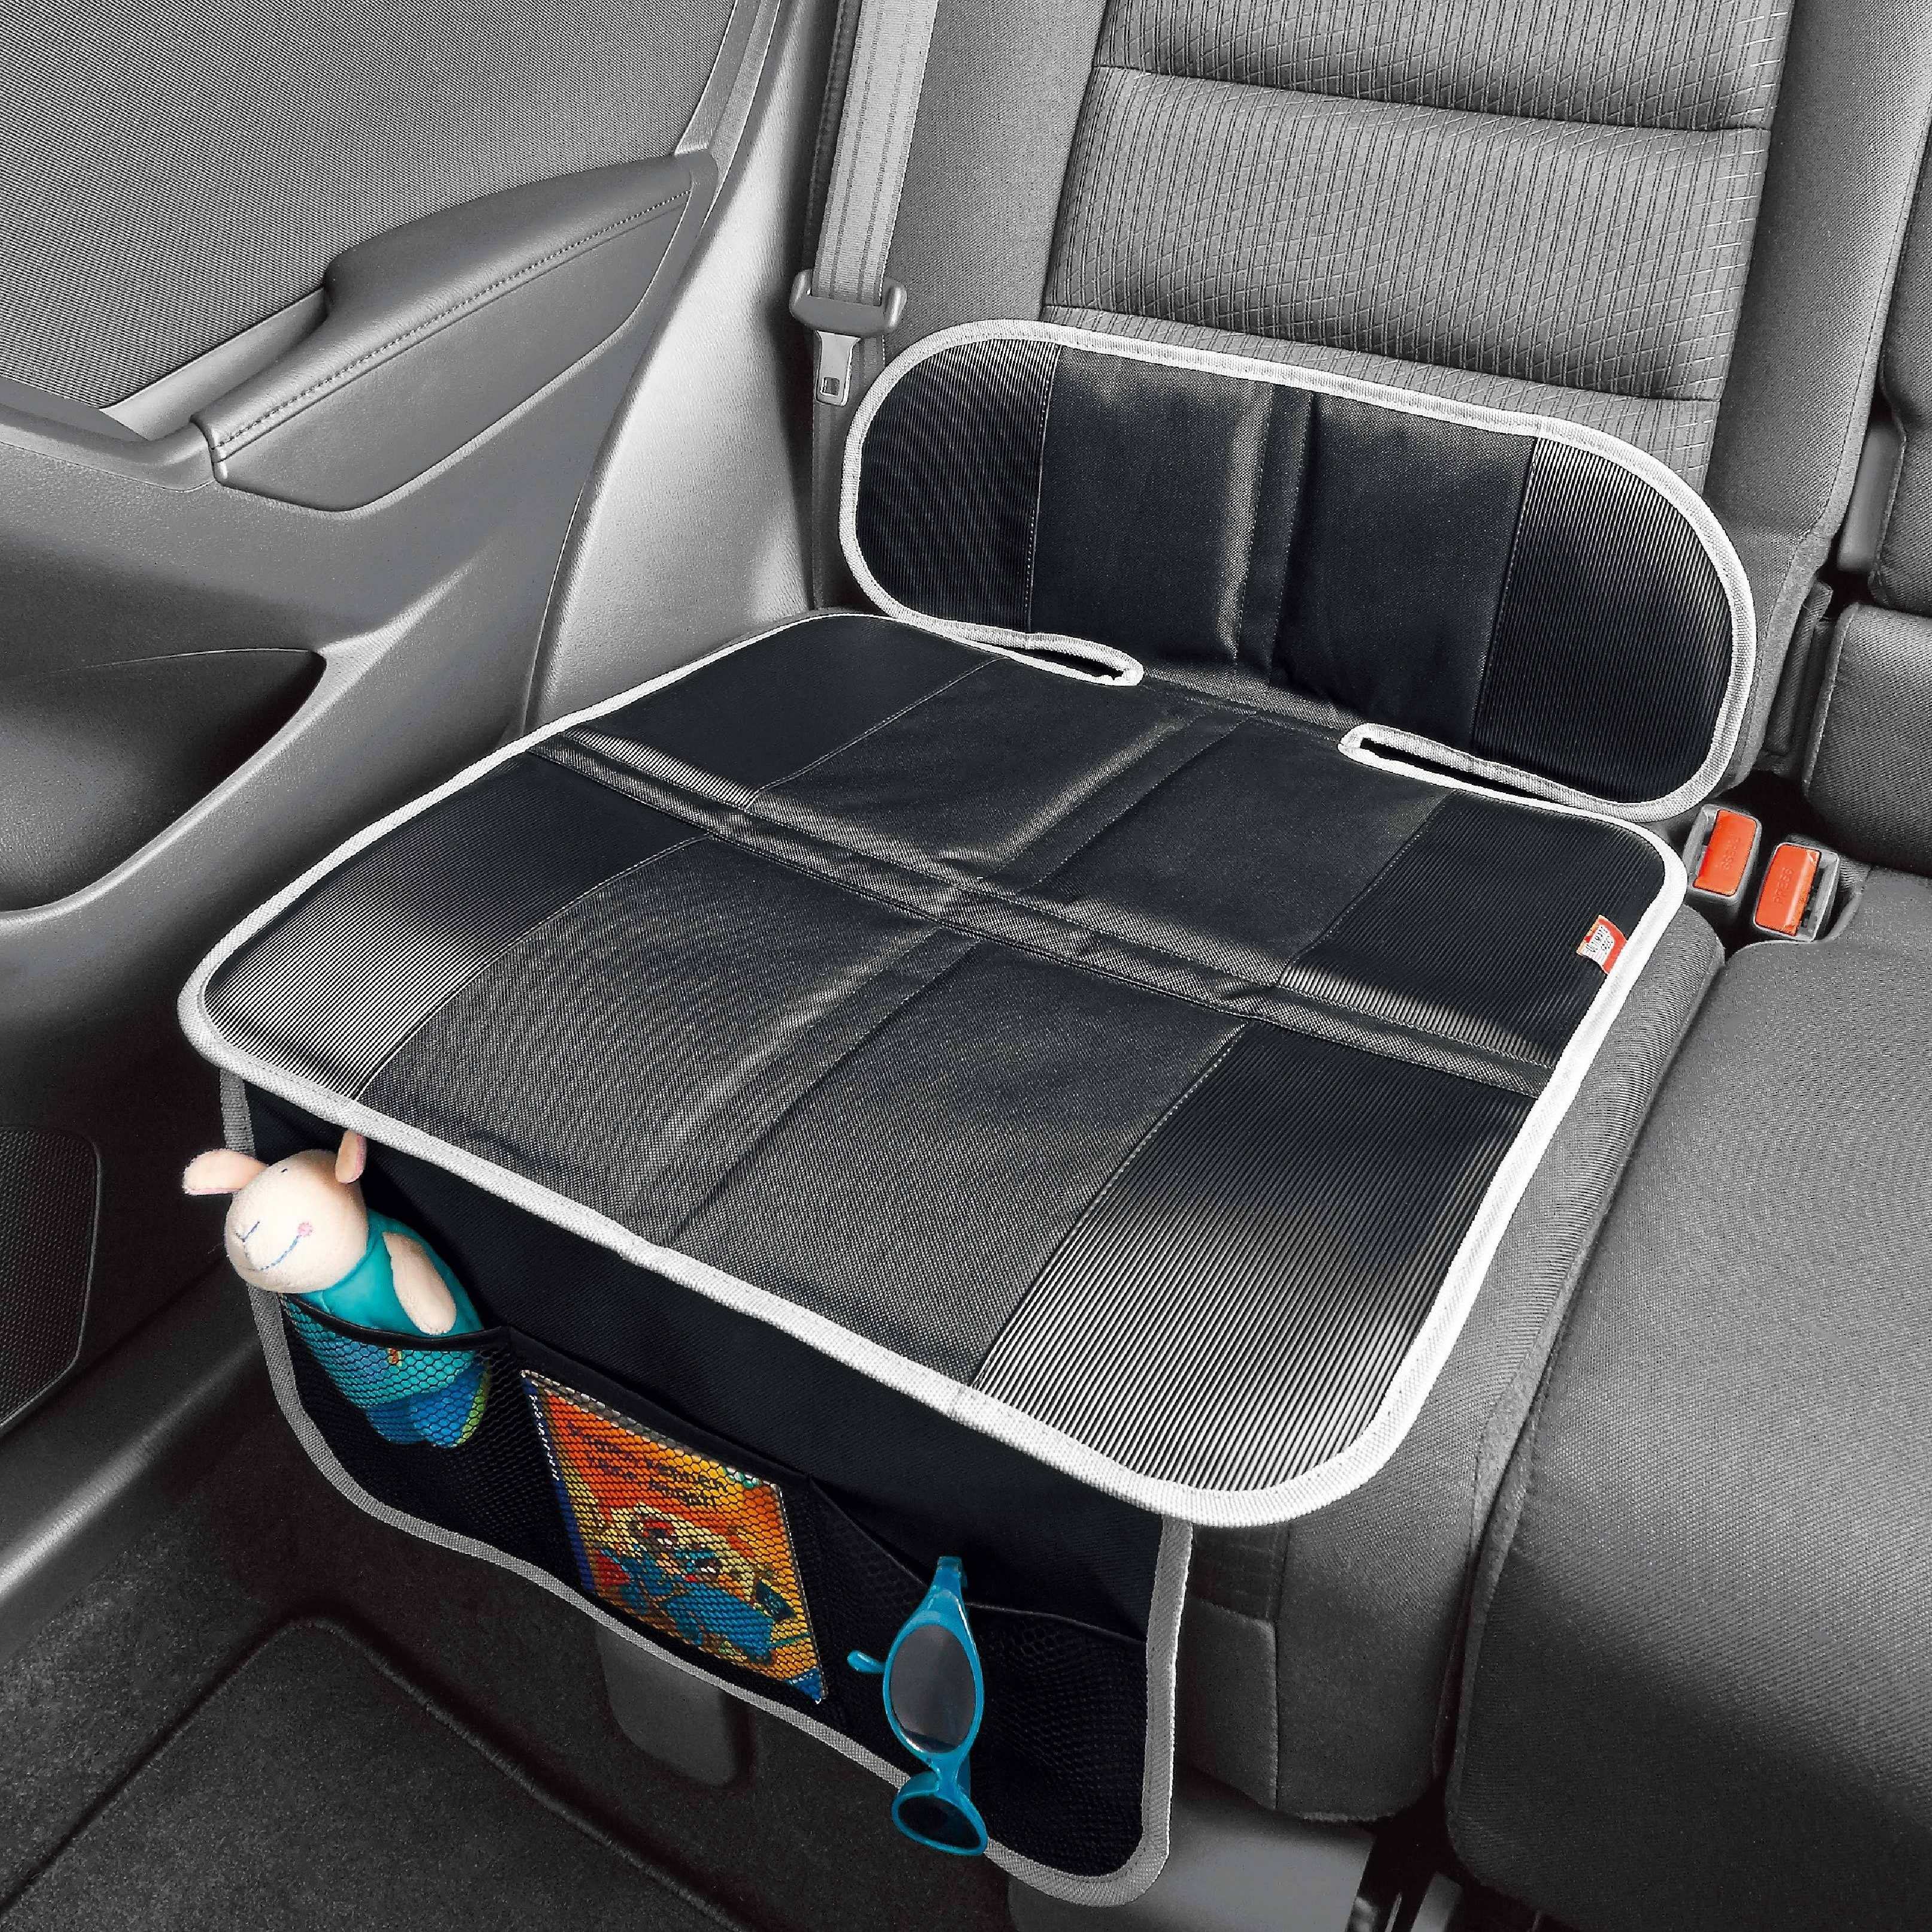 Protection de siège de voiture, avec rembourrage épais, meilleure  protection pour les sièges de voiture, imperméable, protection de siège  auto pour